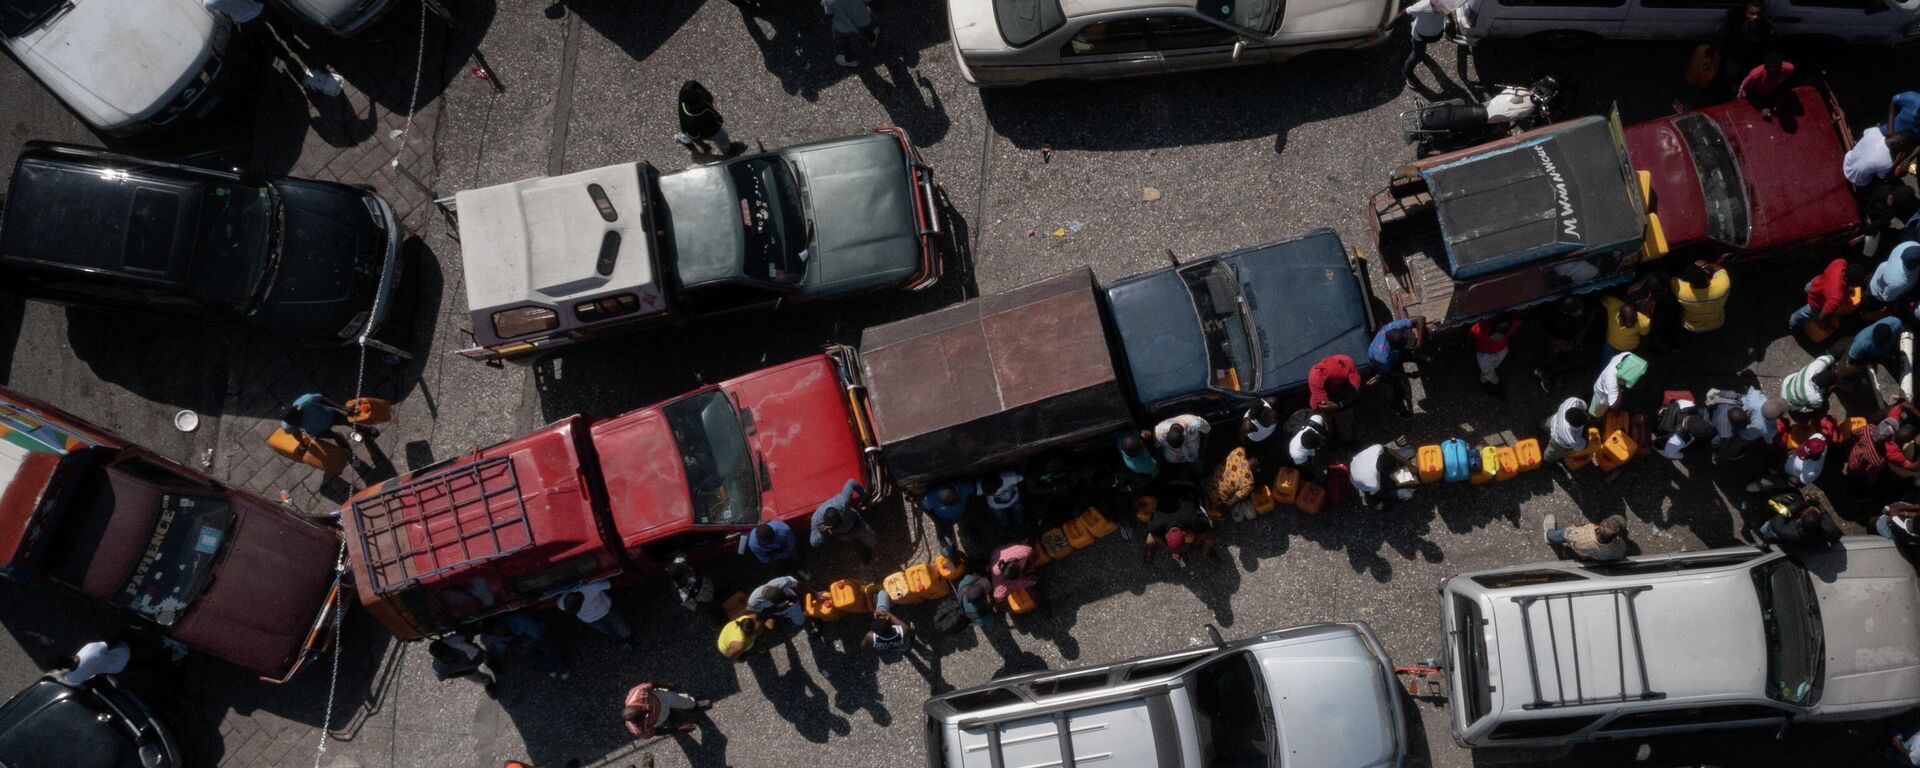 Conductores hacen fila para obtener gasolina en una estación de servicio en medio de una escasez de combustible en todo el país en Puerto Príncipe, Haití, el 1 de noviembre de 2021 - Sputnik Mundo, 1920, 05.11.2021